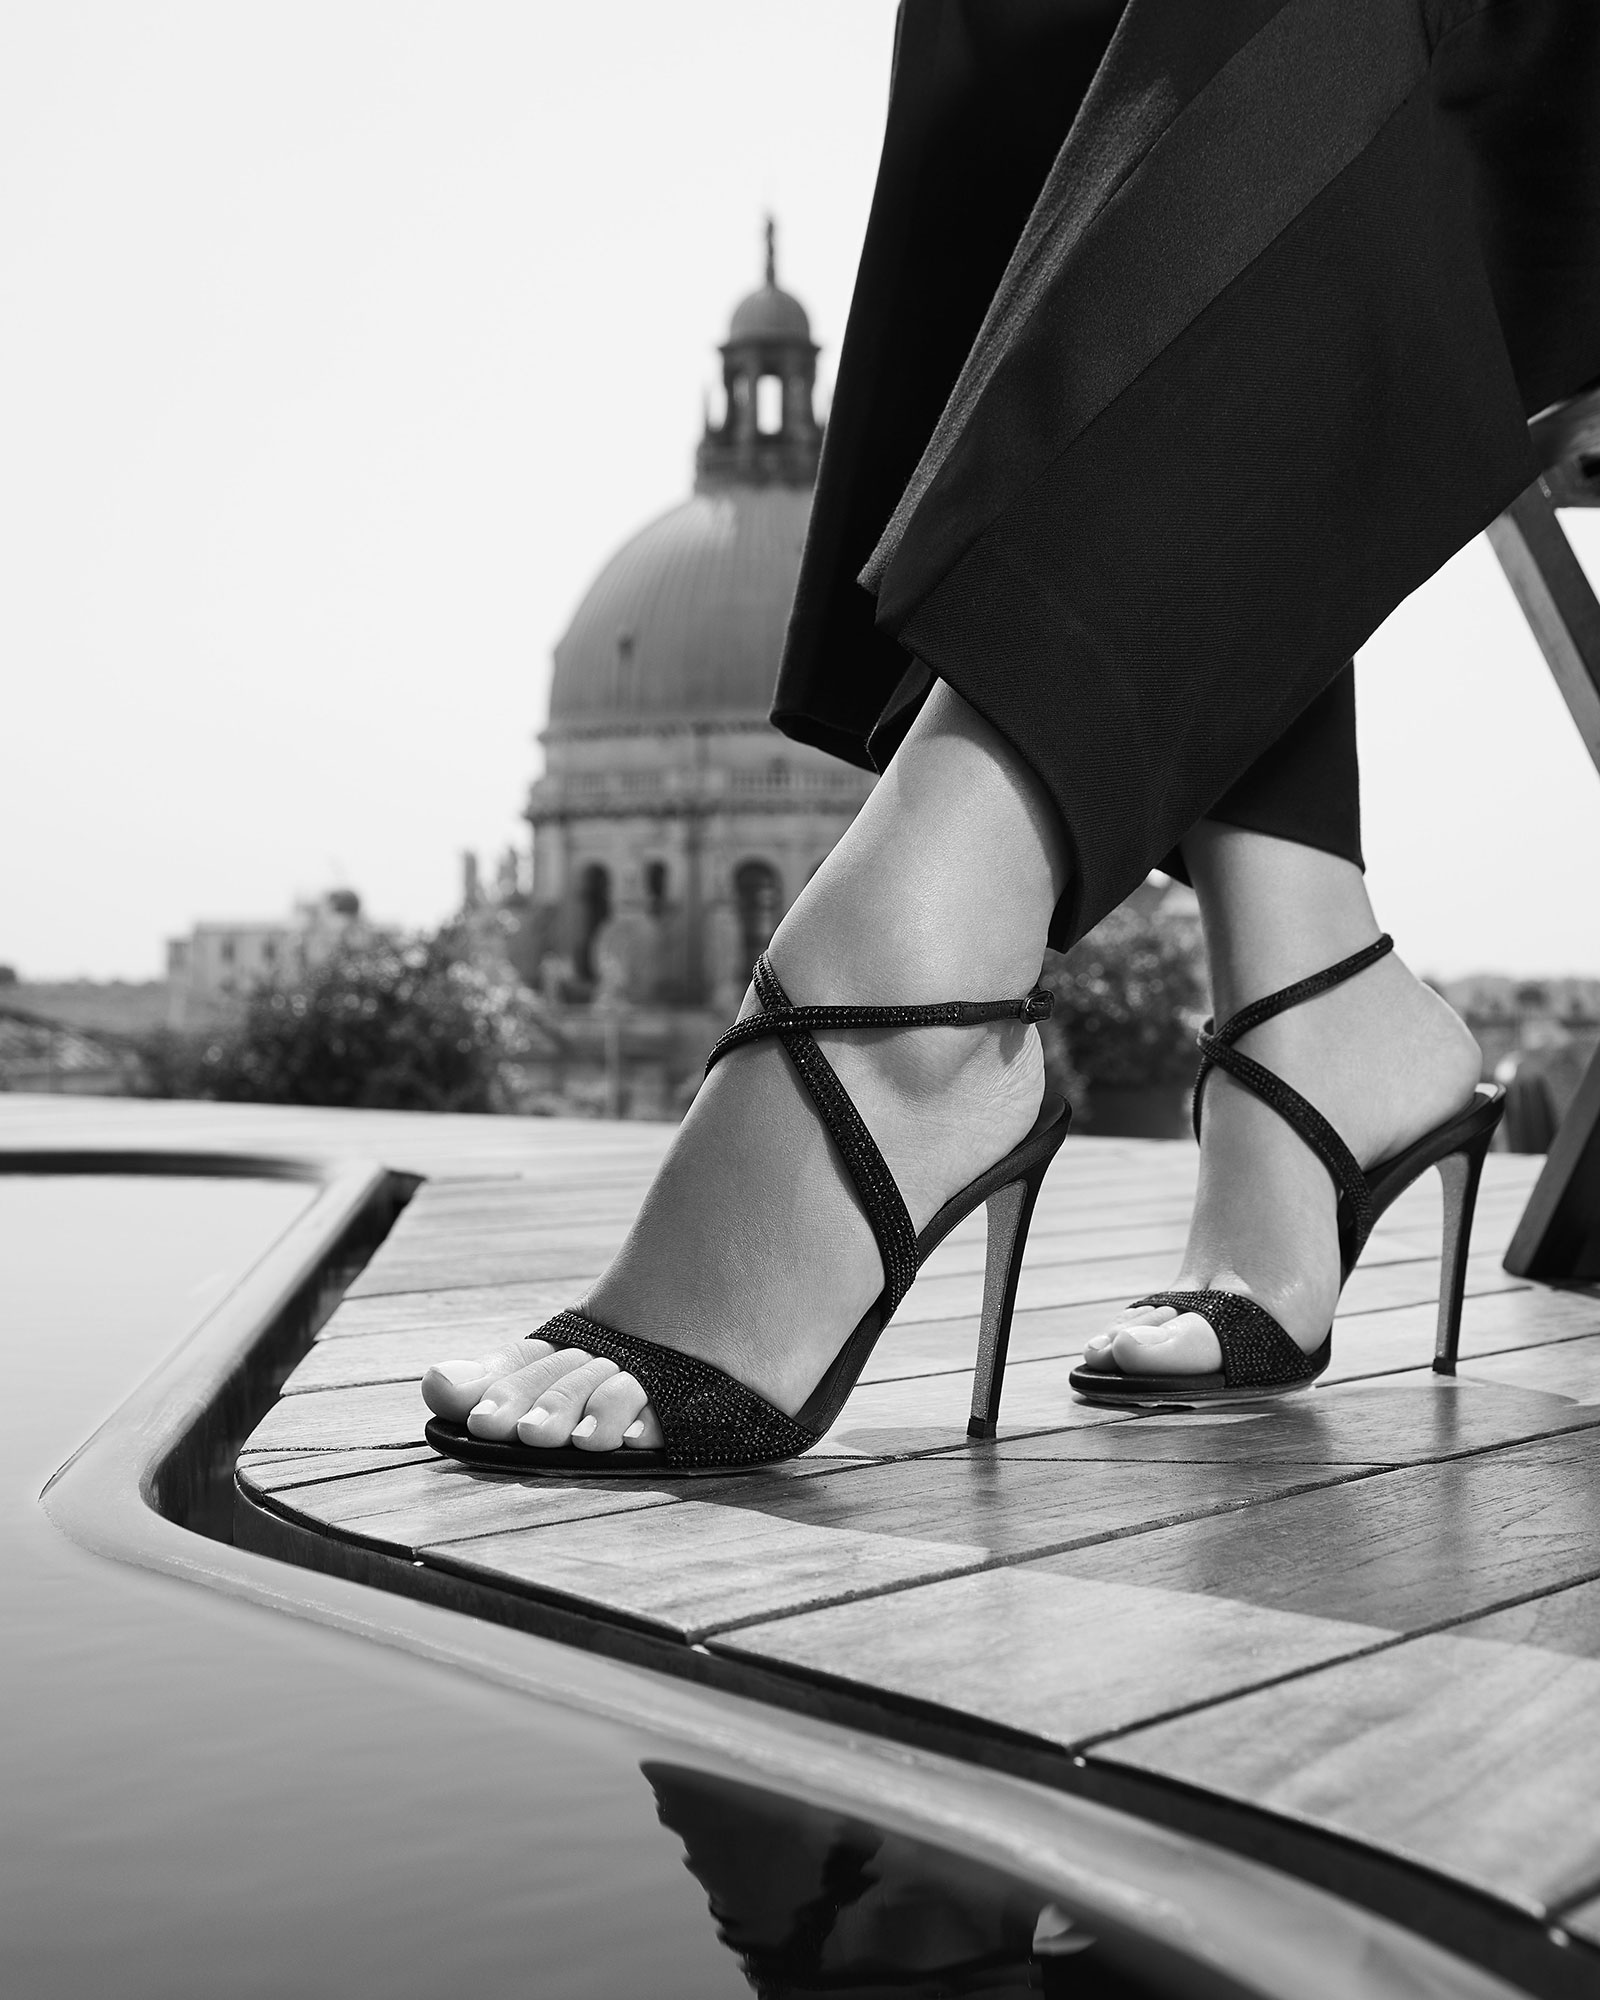 René Caovilla Shoes in Venice | Alison Brezza | Caovilla | Numerique Retouch Photo Retouching Studio